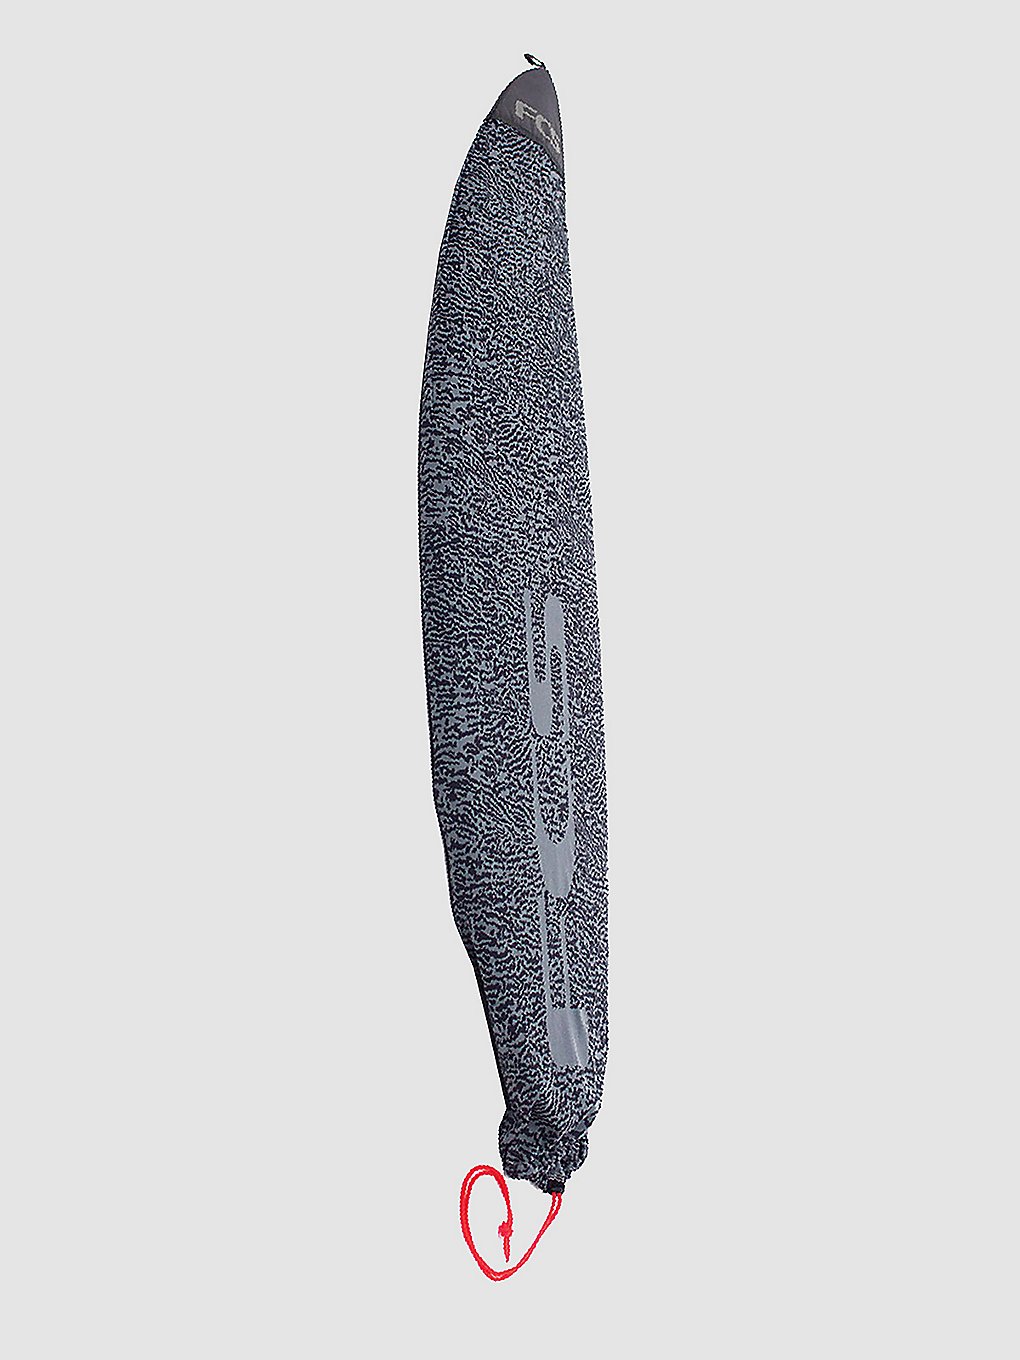 FCS Stretch All Purpose 5'9 Surfboard-Tasche carbon kaufen